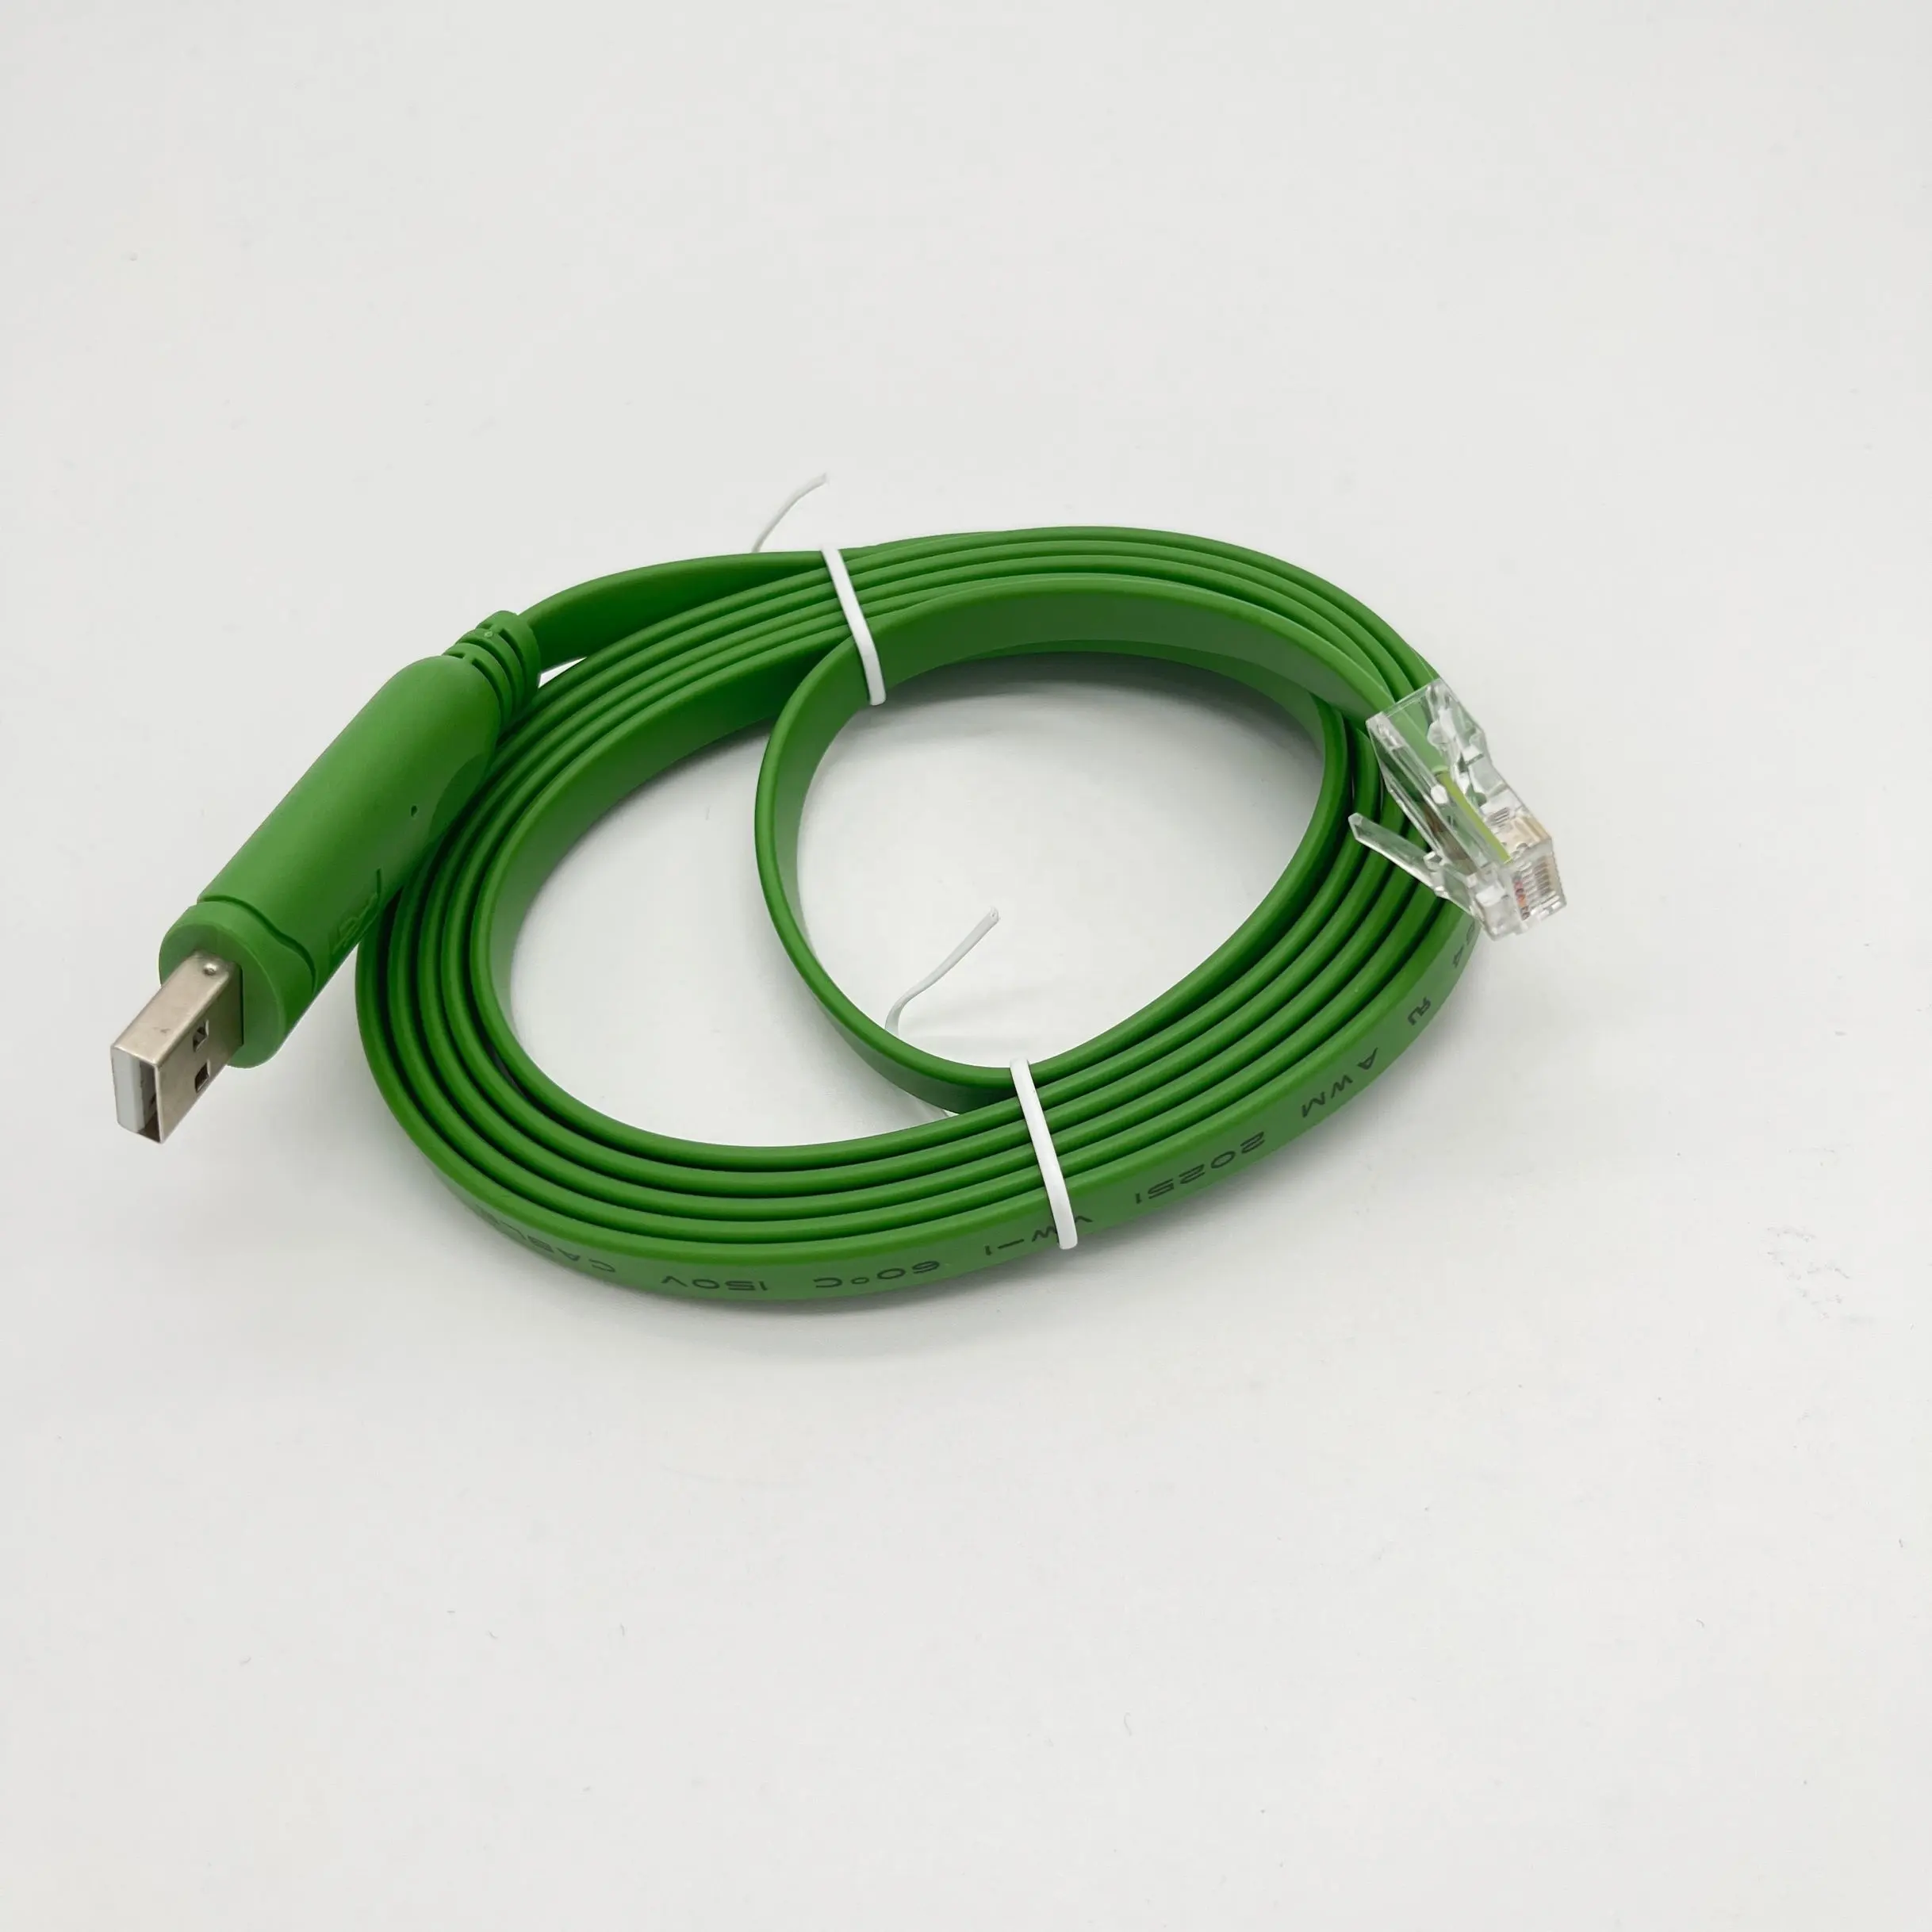 6ft USB zu RJ45 Serial Adapter Konsolen kabel für Router/Switch